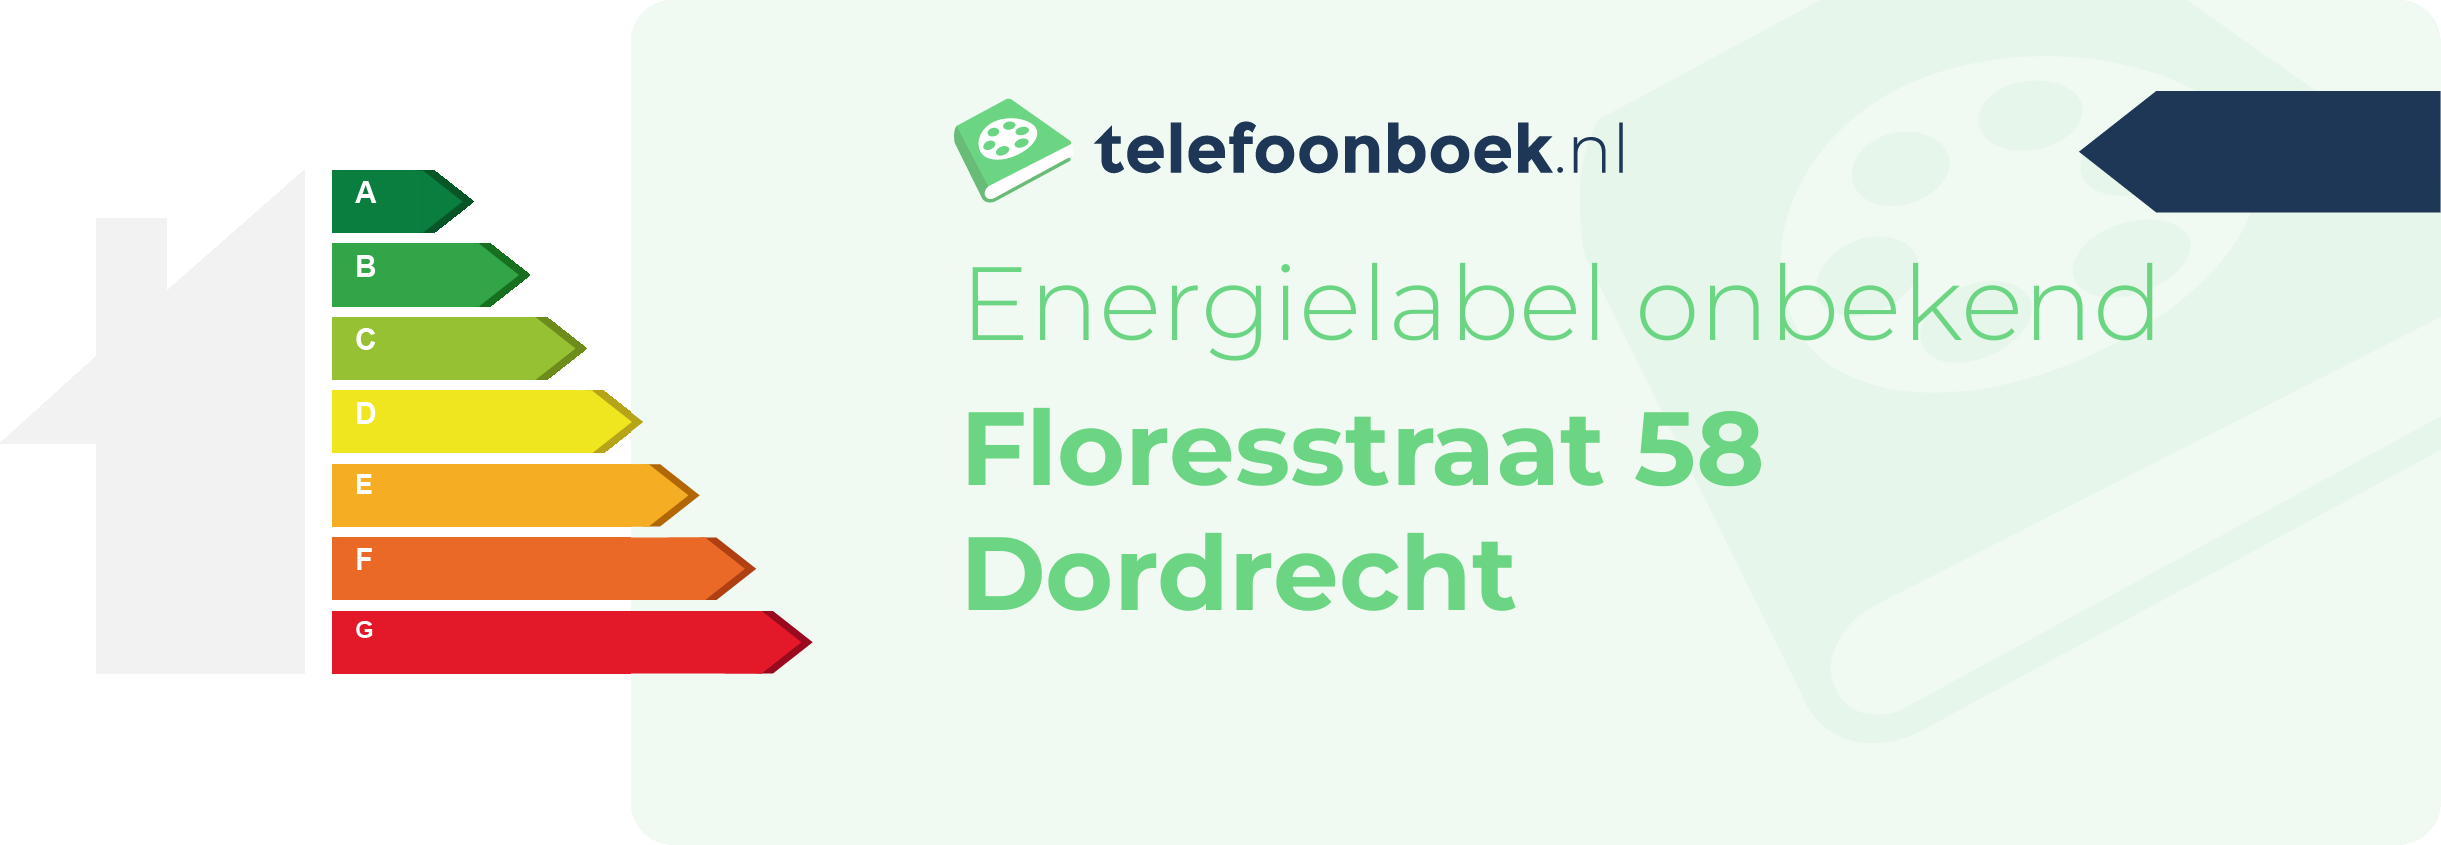 Energielabel Floresstraat 58 Dordrecht